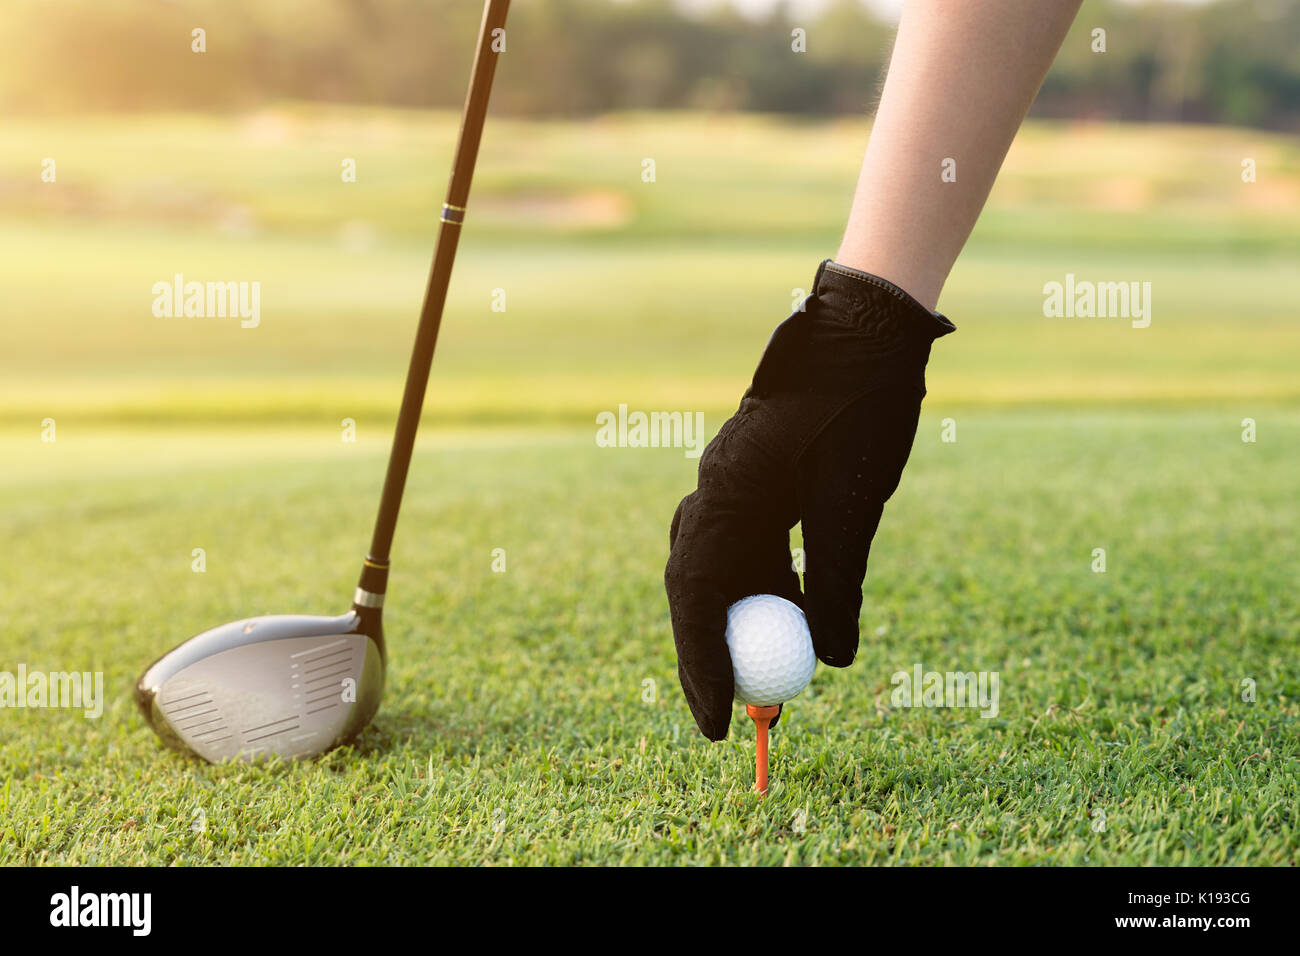 Plaçant une main tee avec une balle de golf. Tenir la main avec une balle de golf tee sur le cours, close-up Banque D'Images